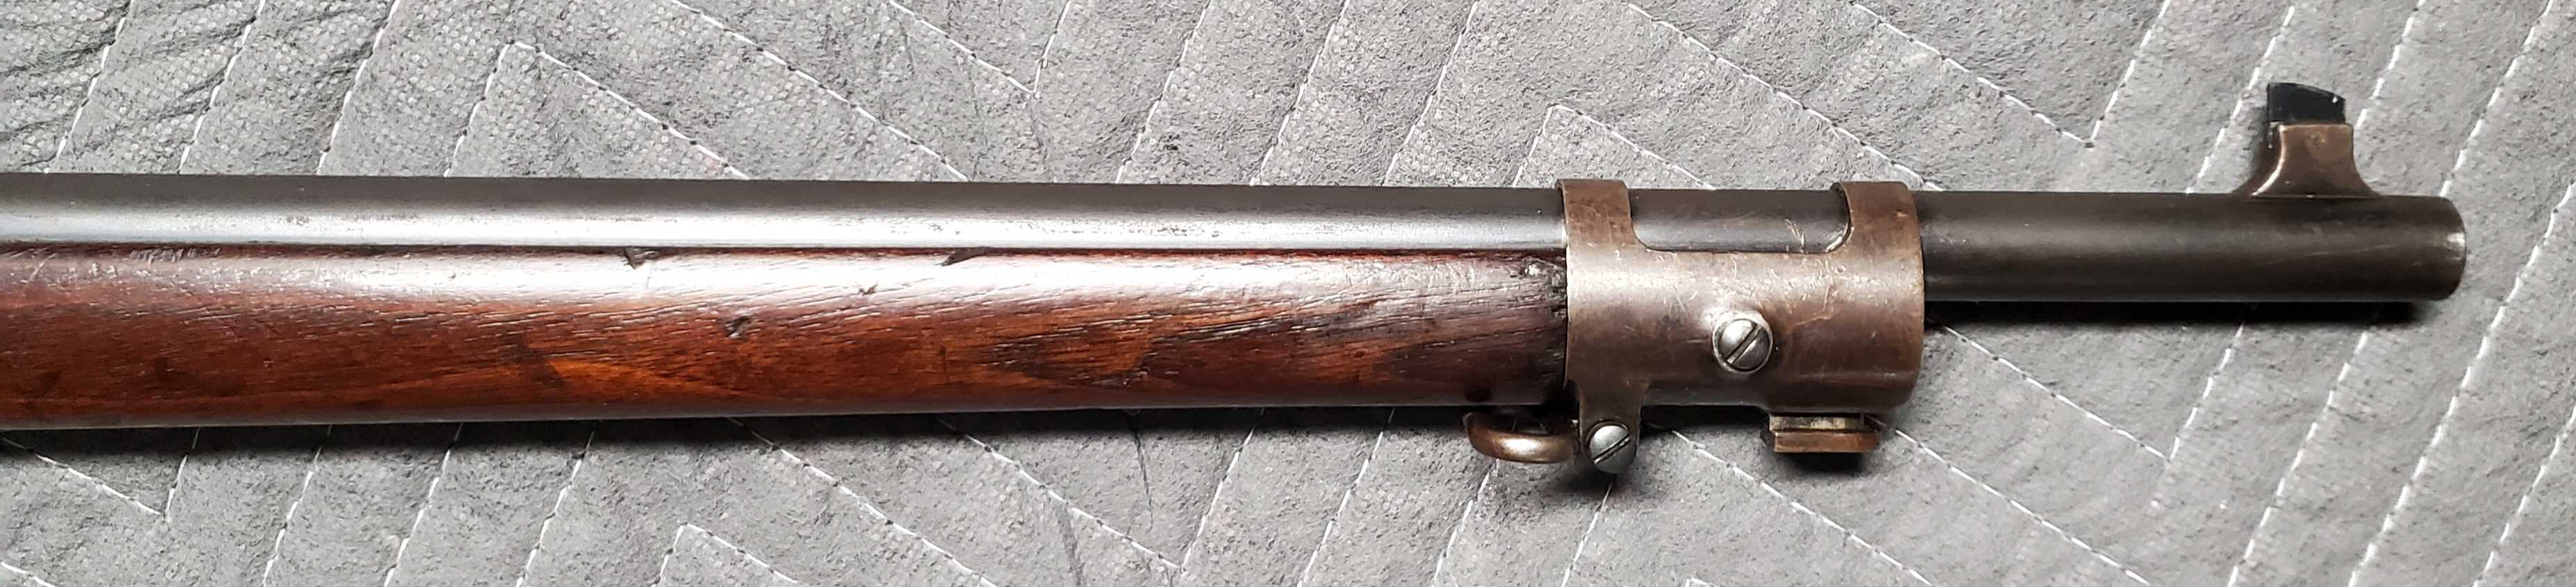 Krag Rifle8.jpg